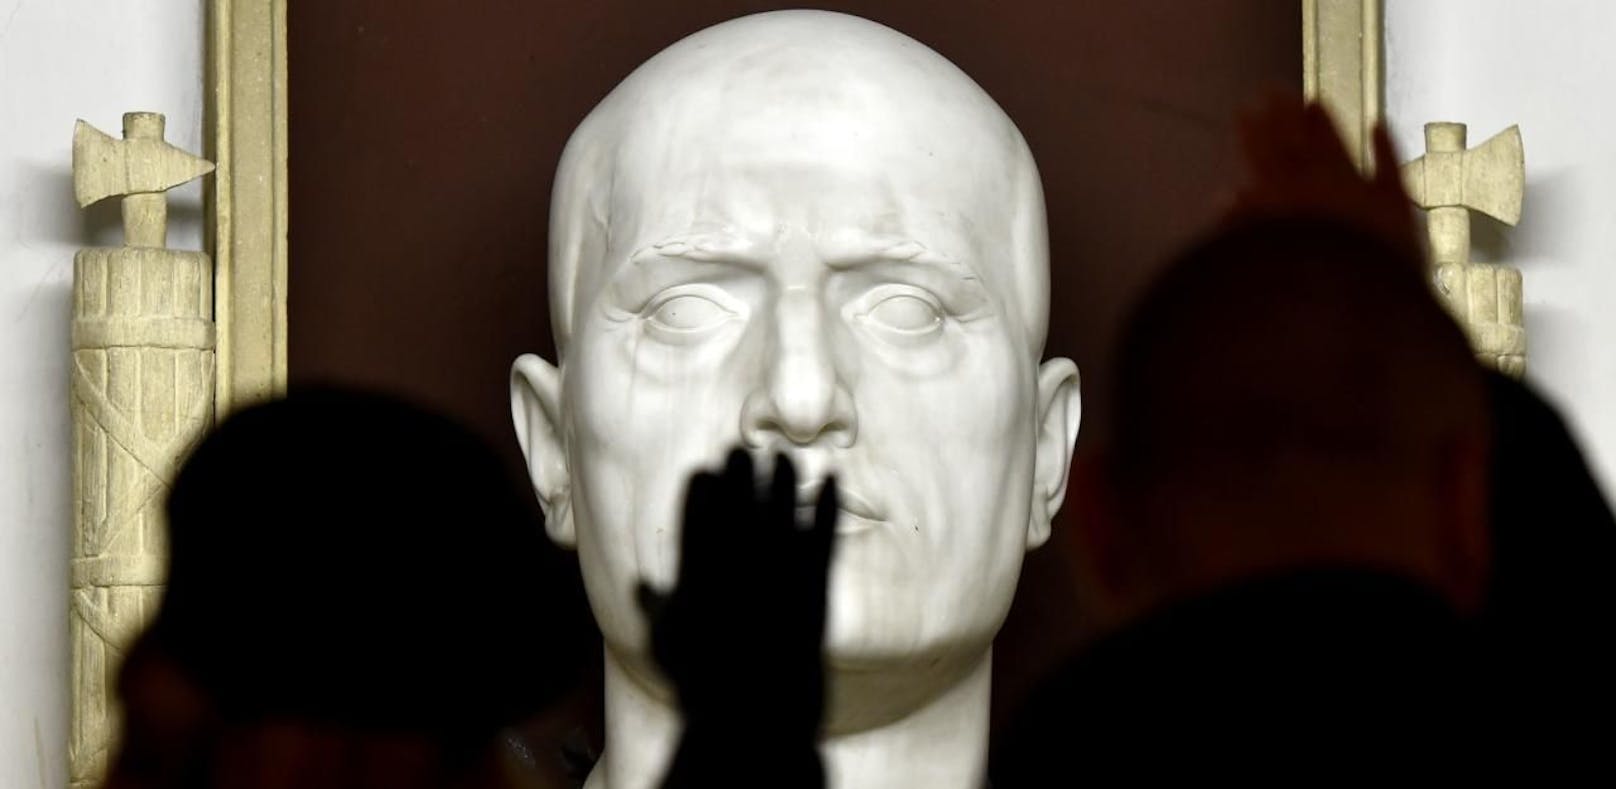 Italien: Verherrlichung von Faschismus wird strafbar